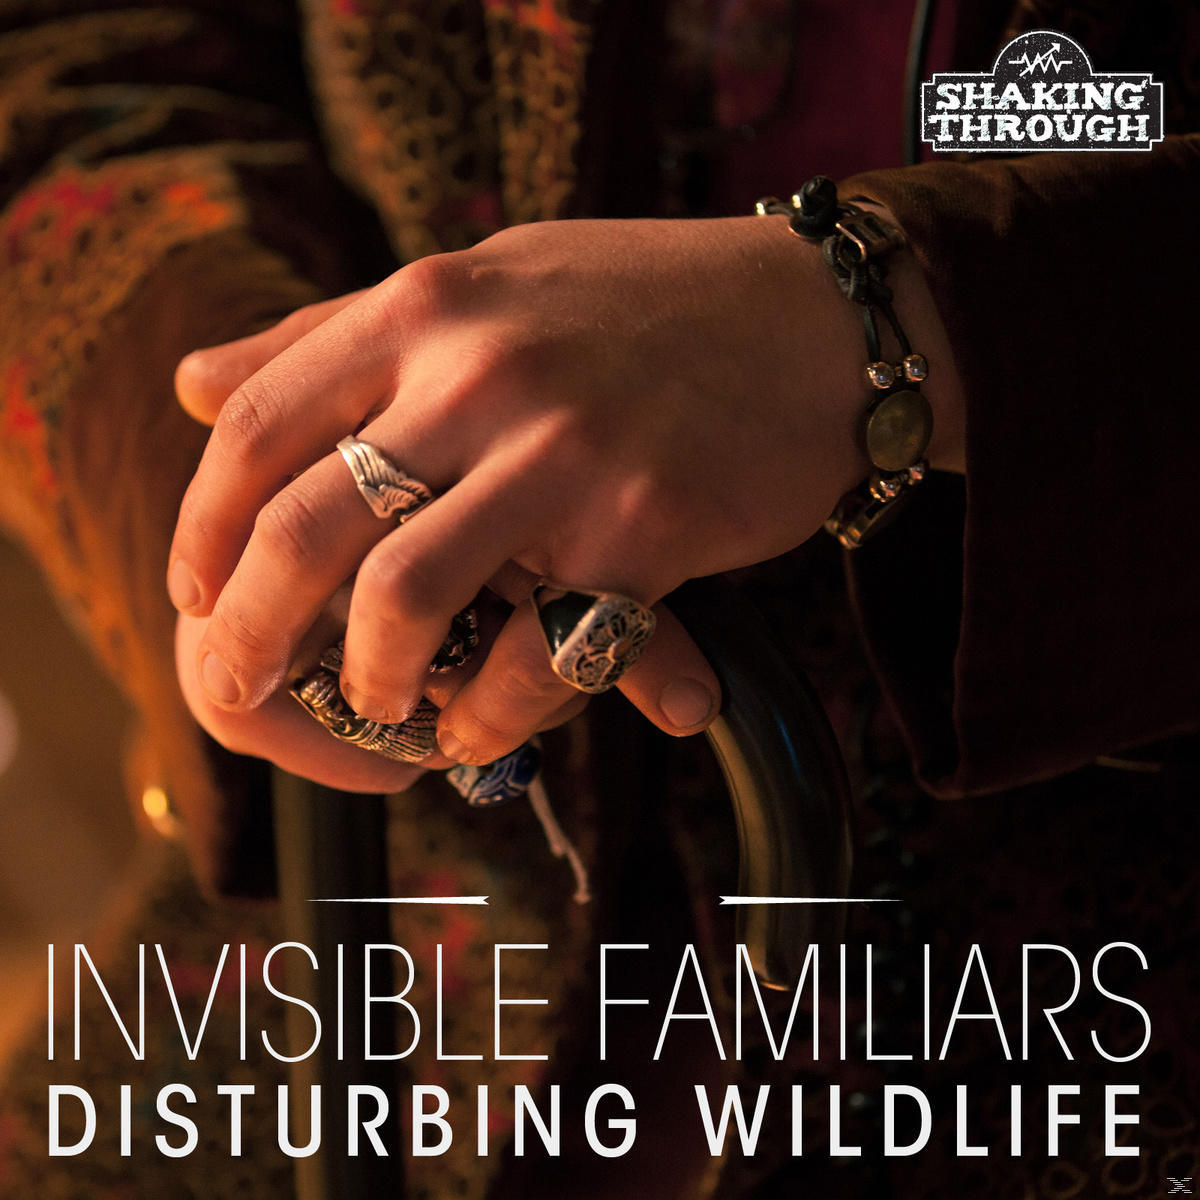 Invisible - Familiars - Wildlife (CD) Disturbing